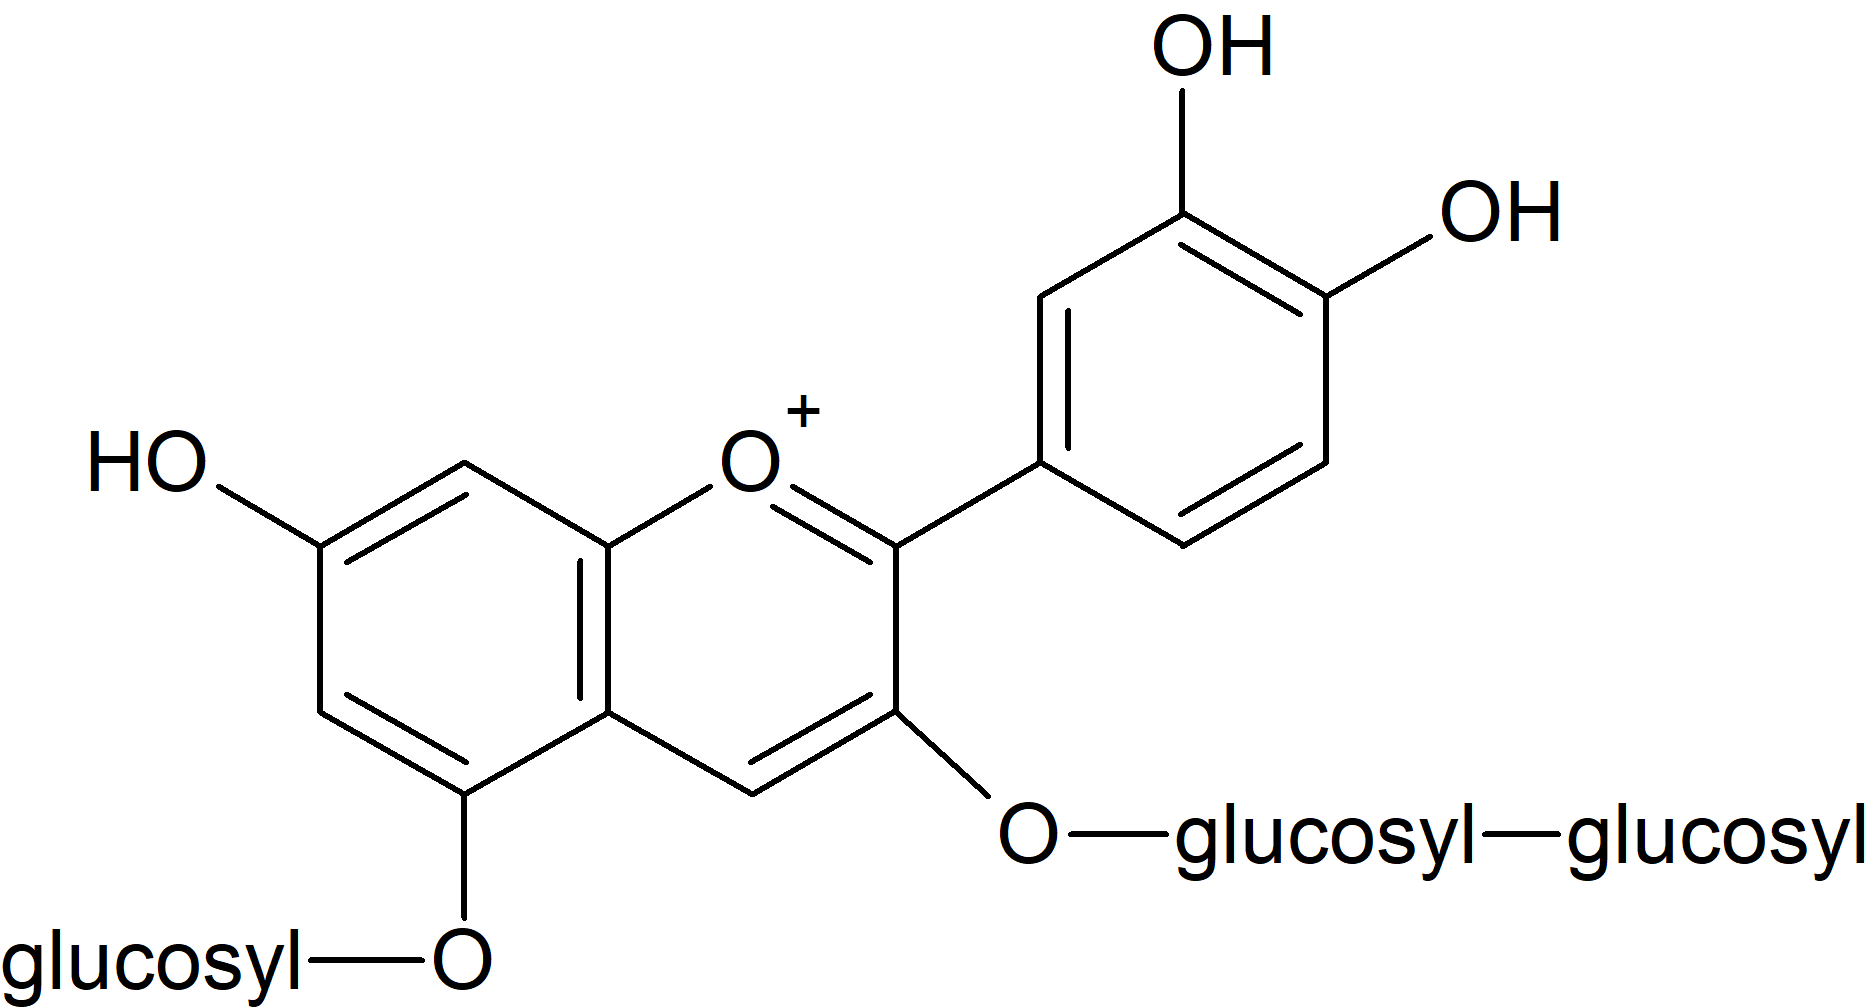 Cyanidin 3-O-diglucoside-5-O-glucoside